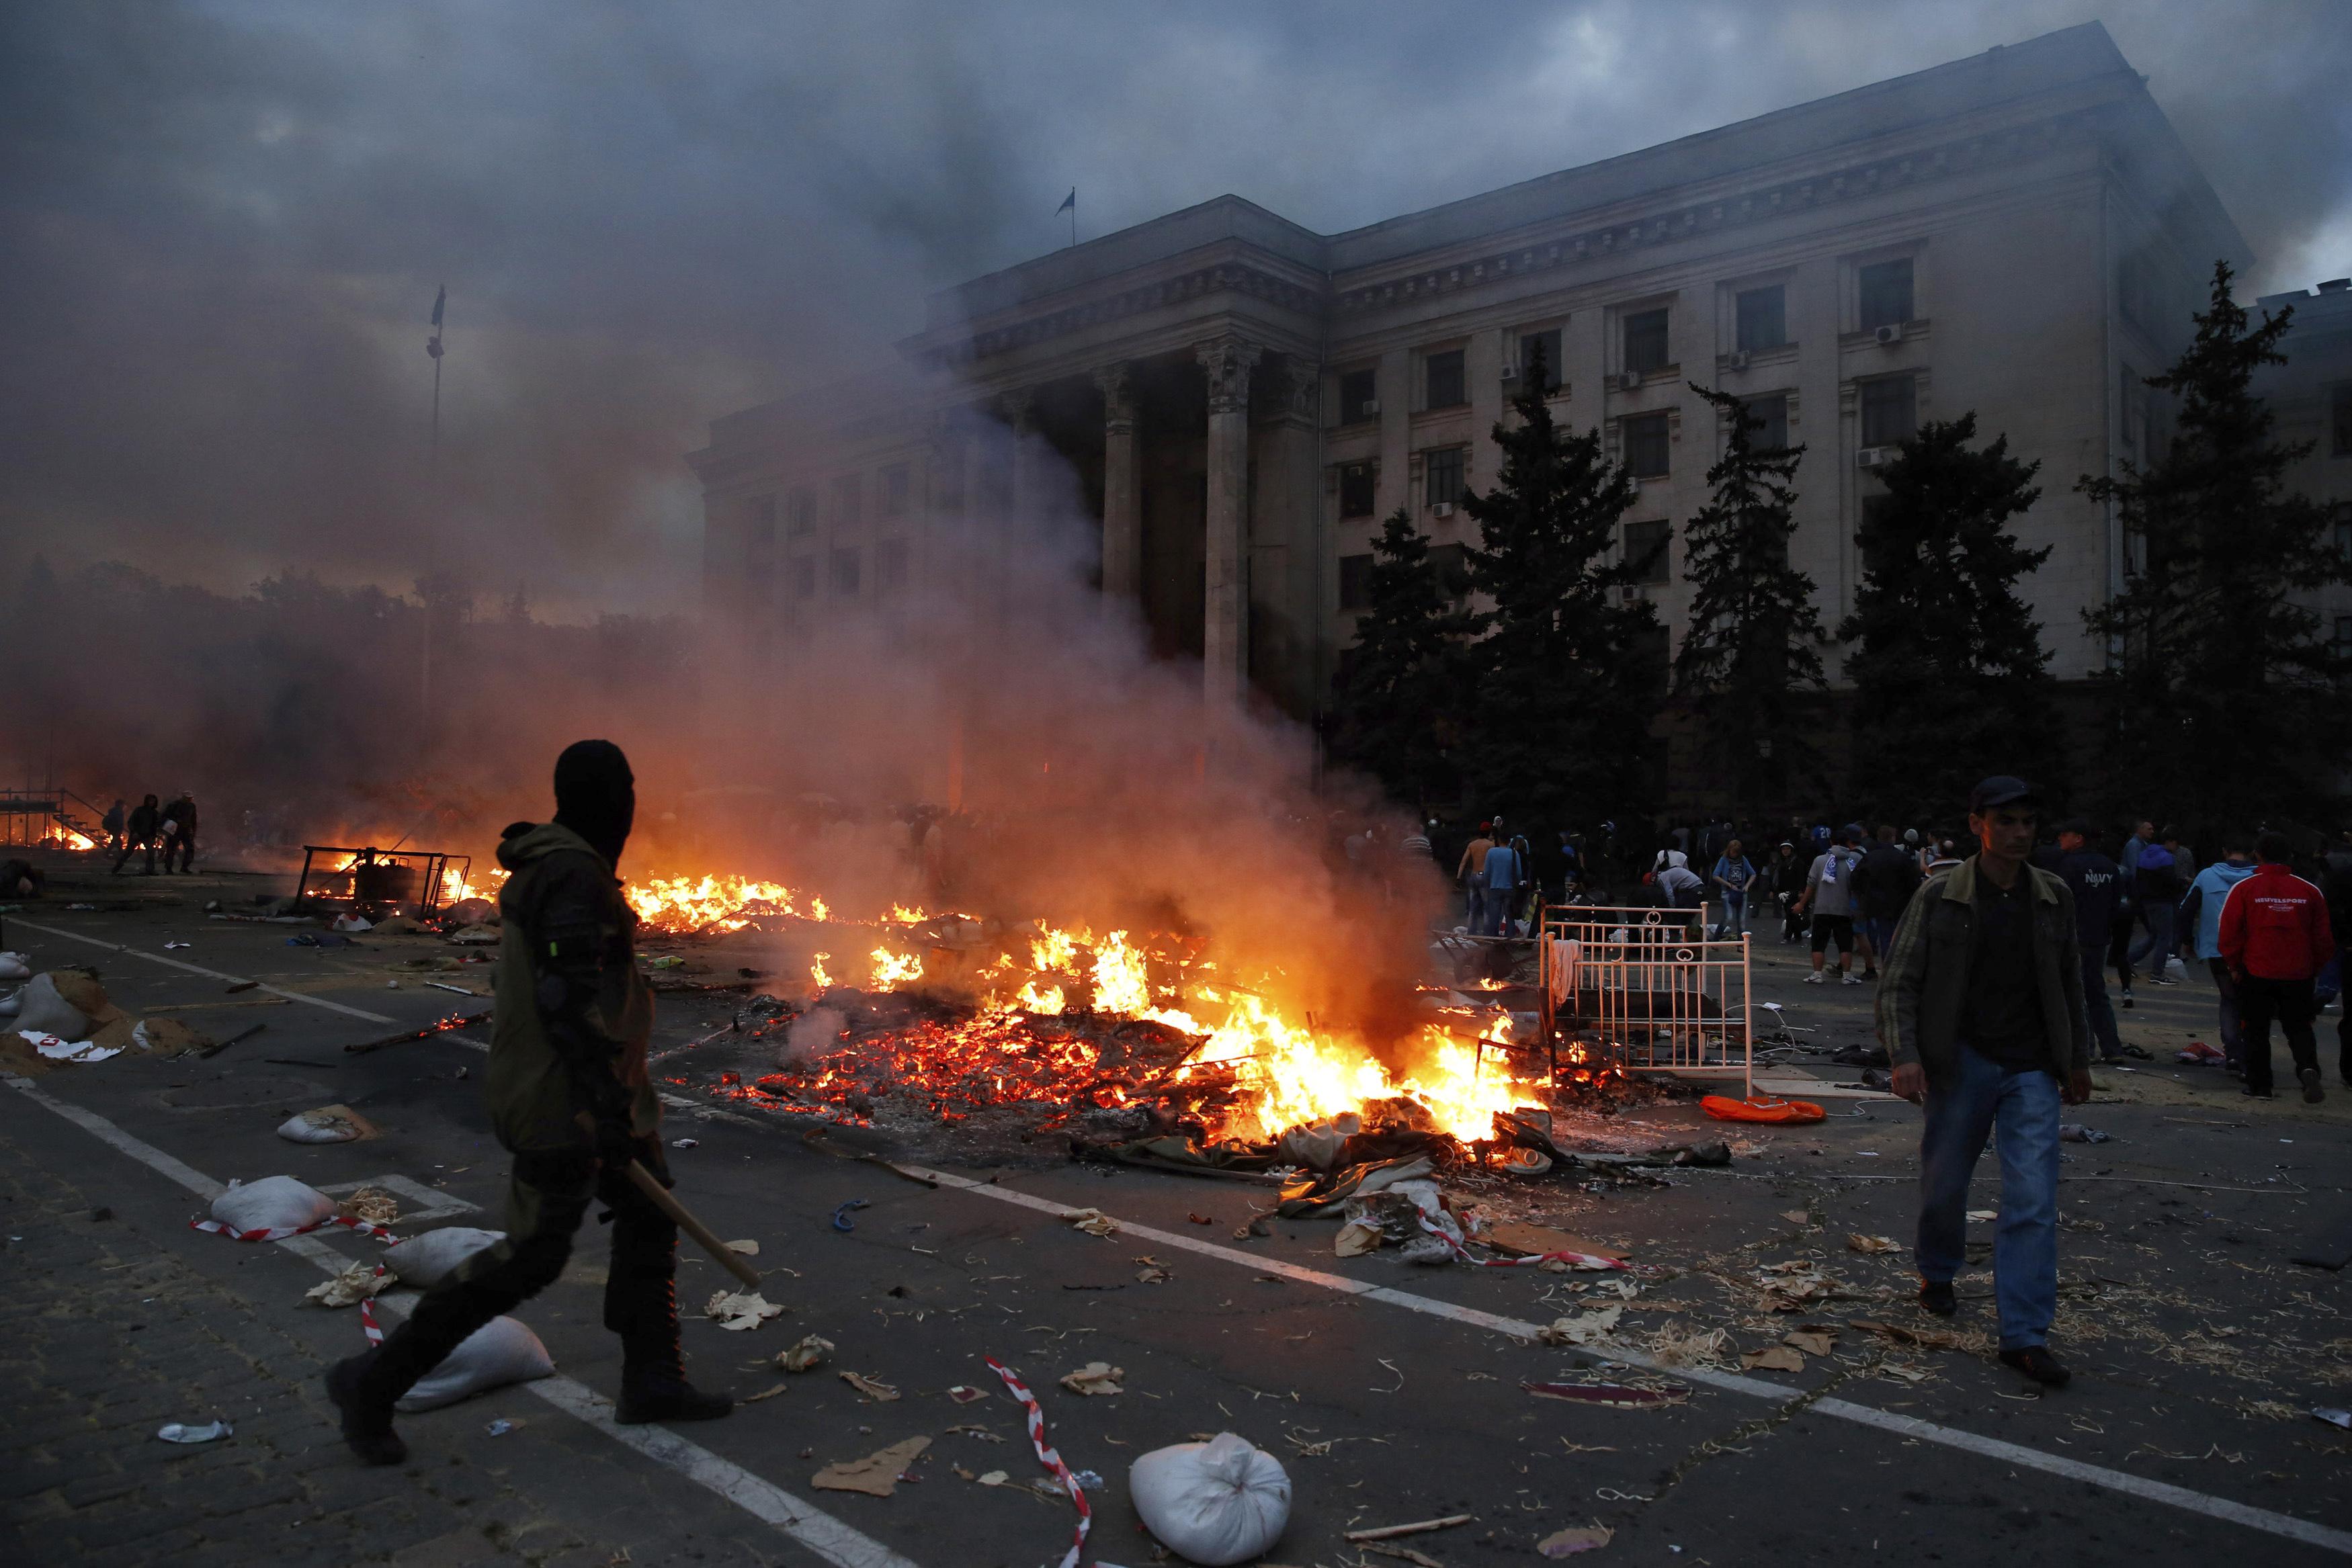 US condemns 'unacceptable' Odessa violence